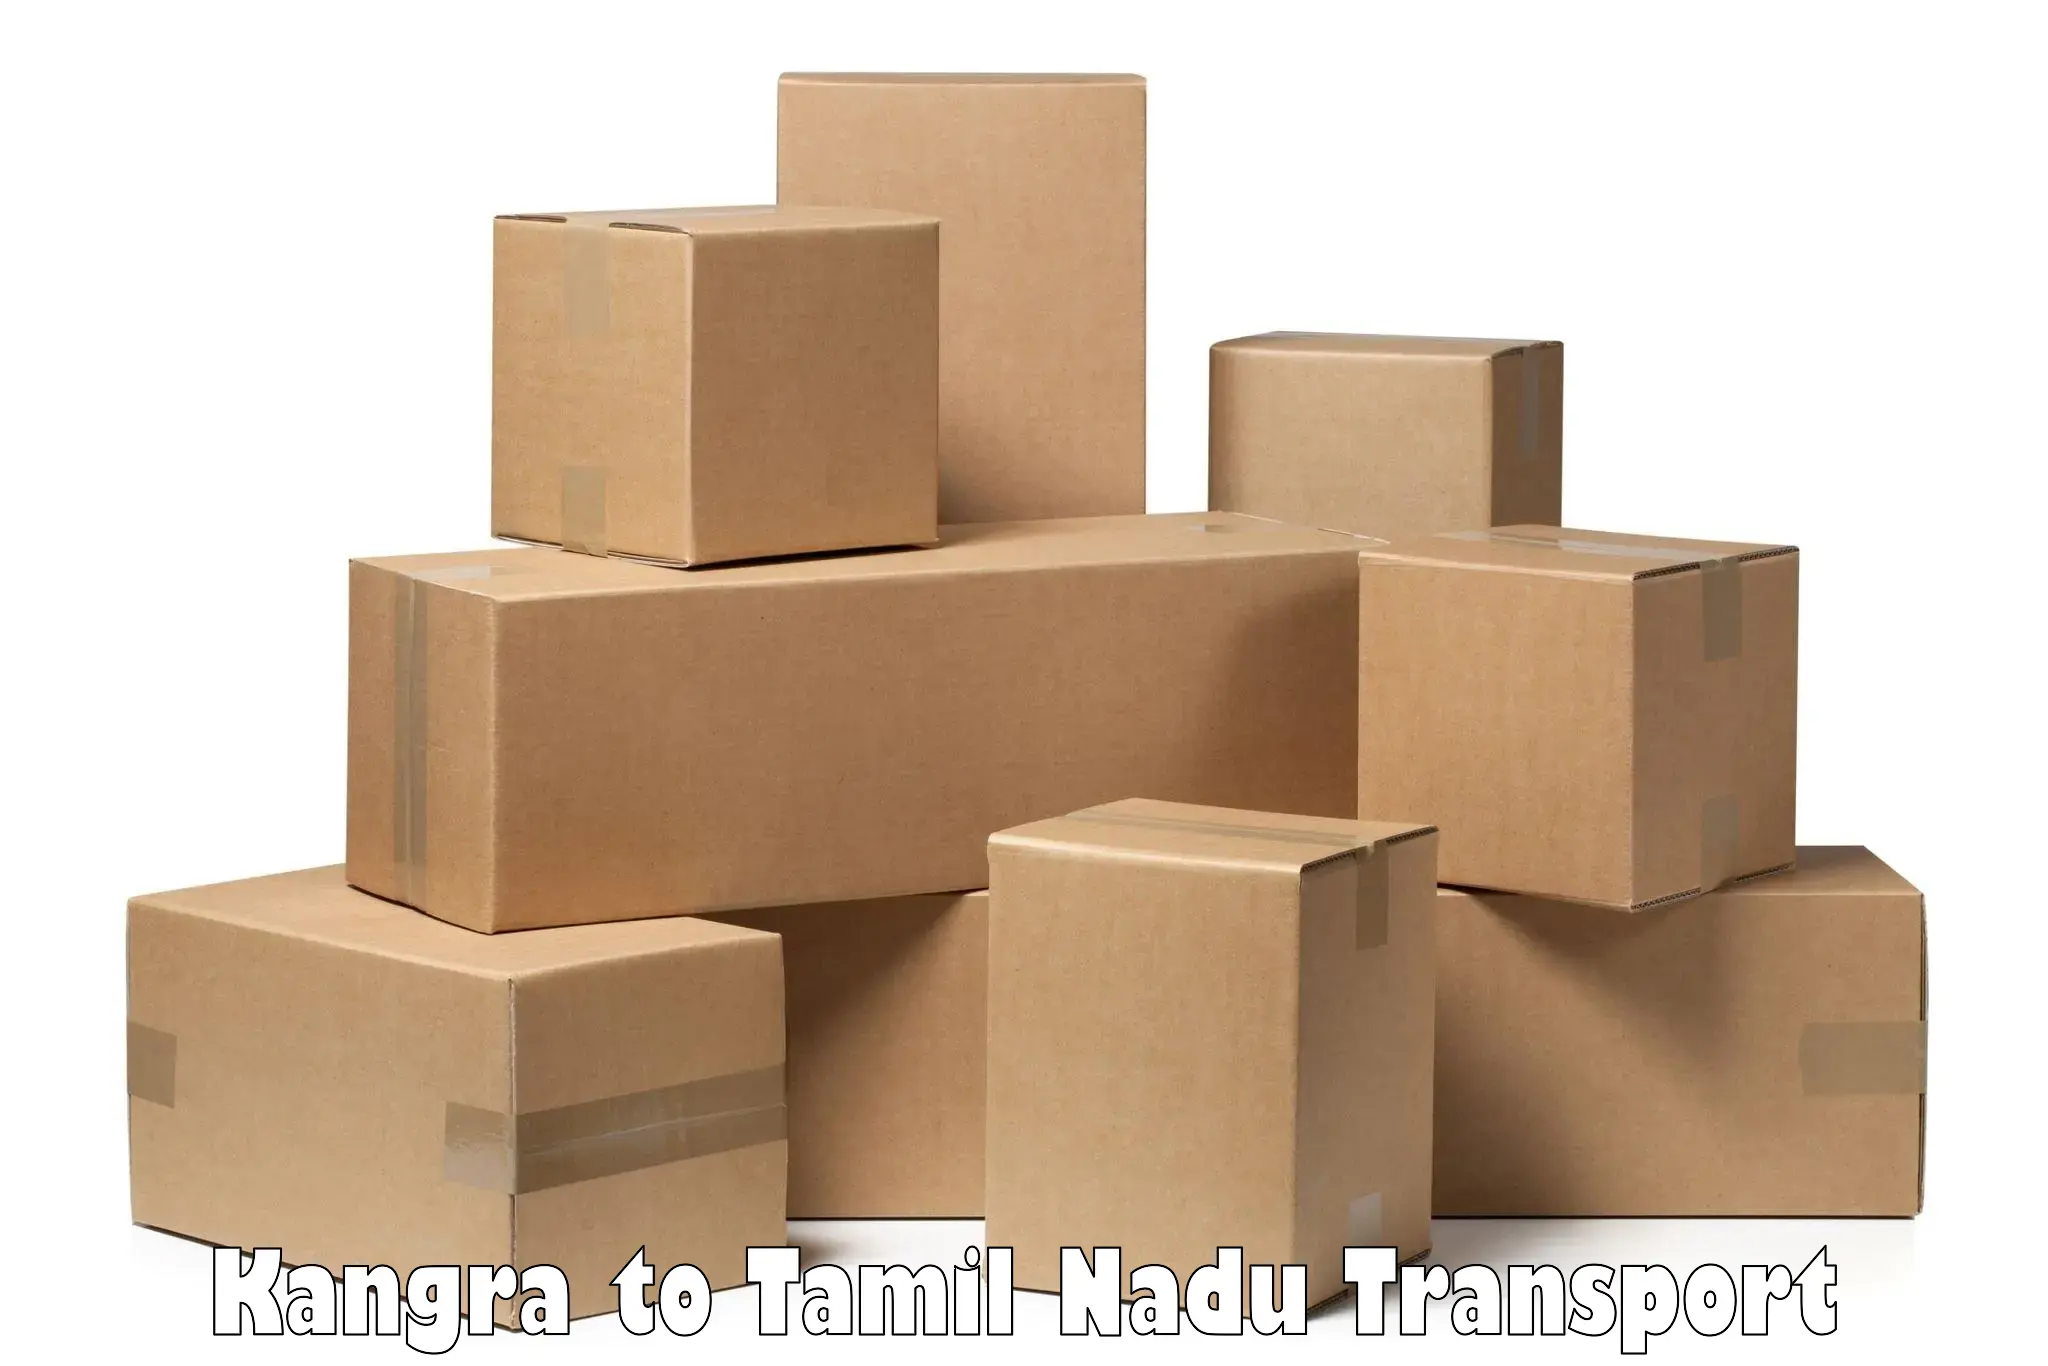 Vehicle parcel service Kangra to Valparai